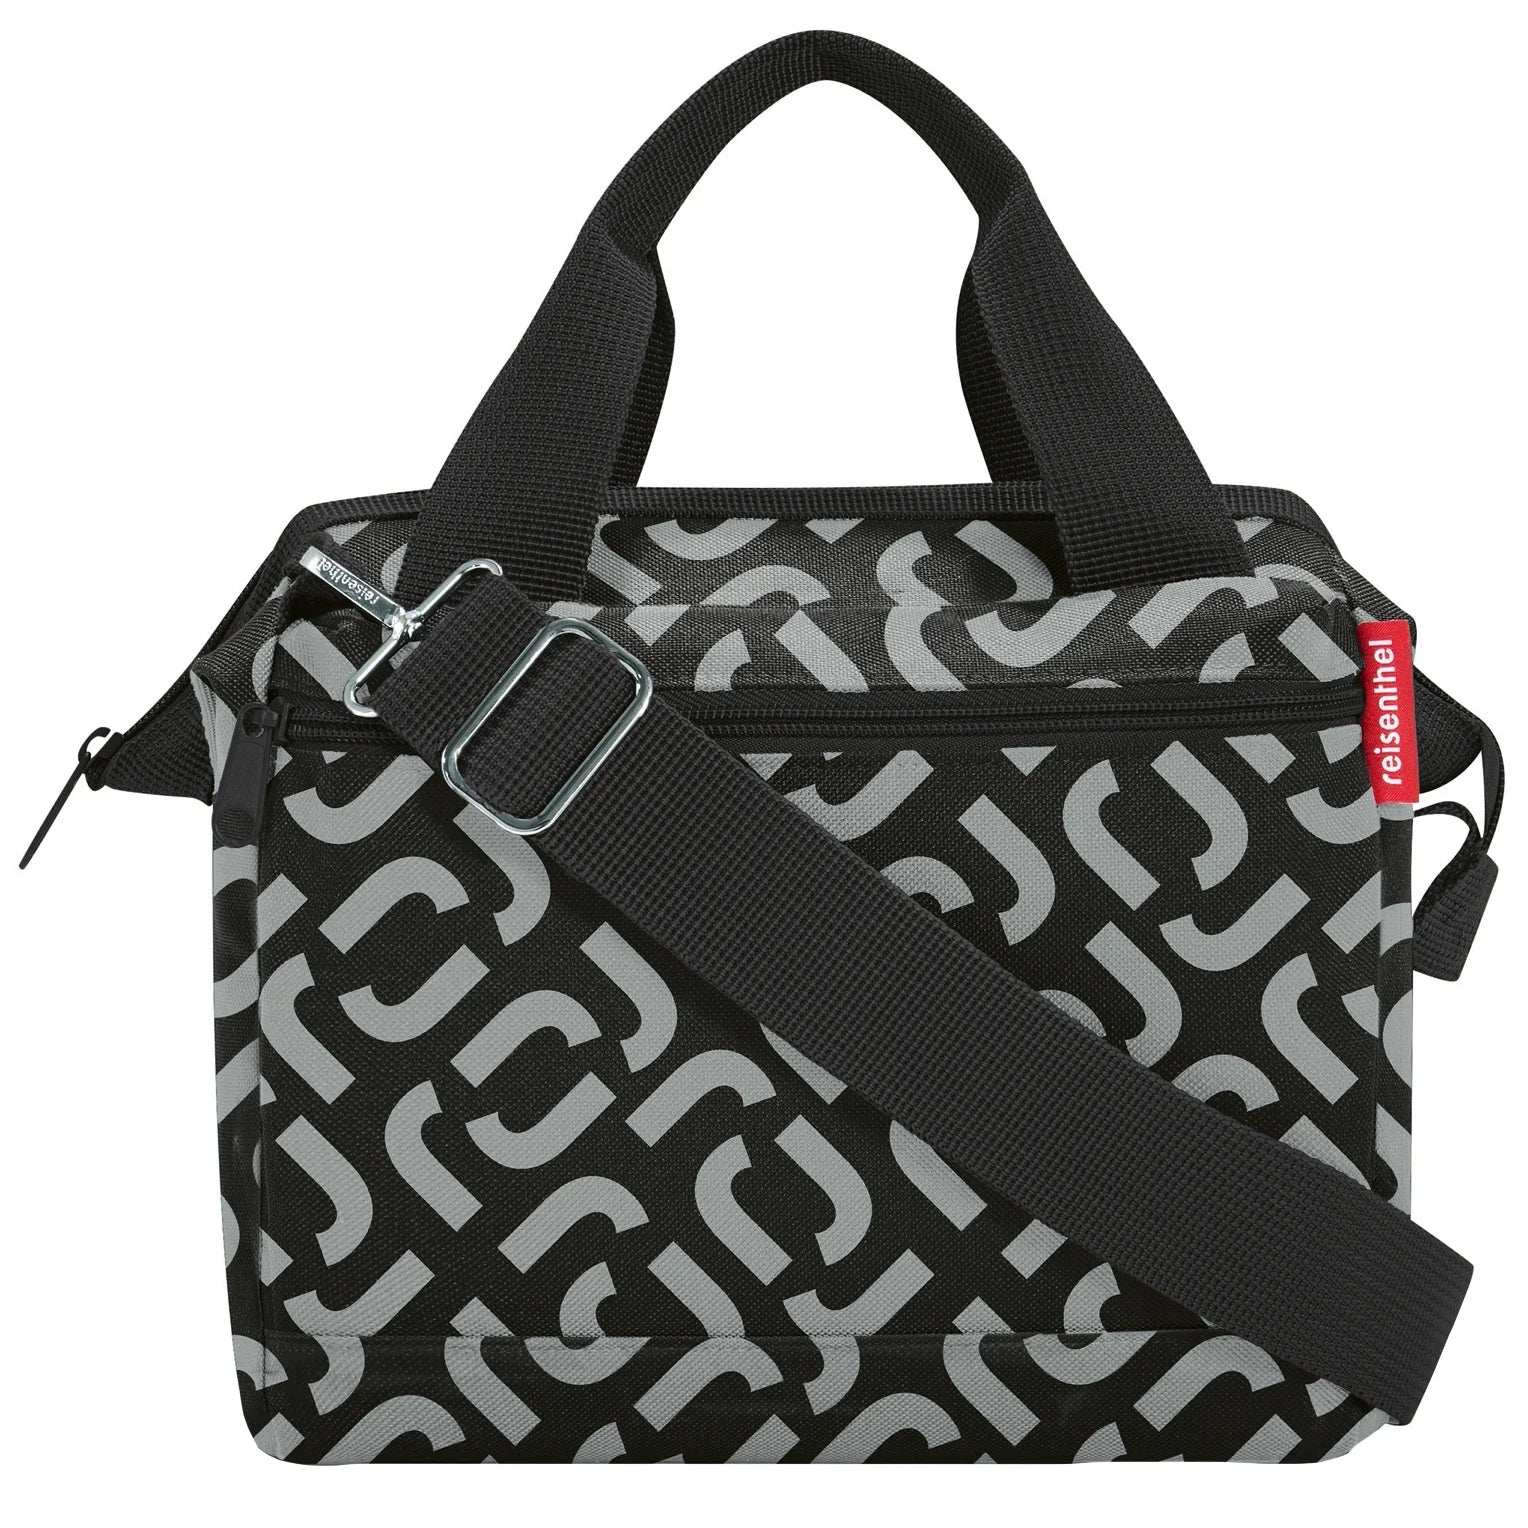 Reisenthel Travelling Allrounder Cross shoulder bag 24 cm - signature black